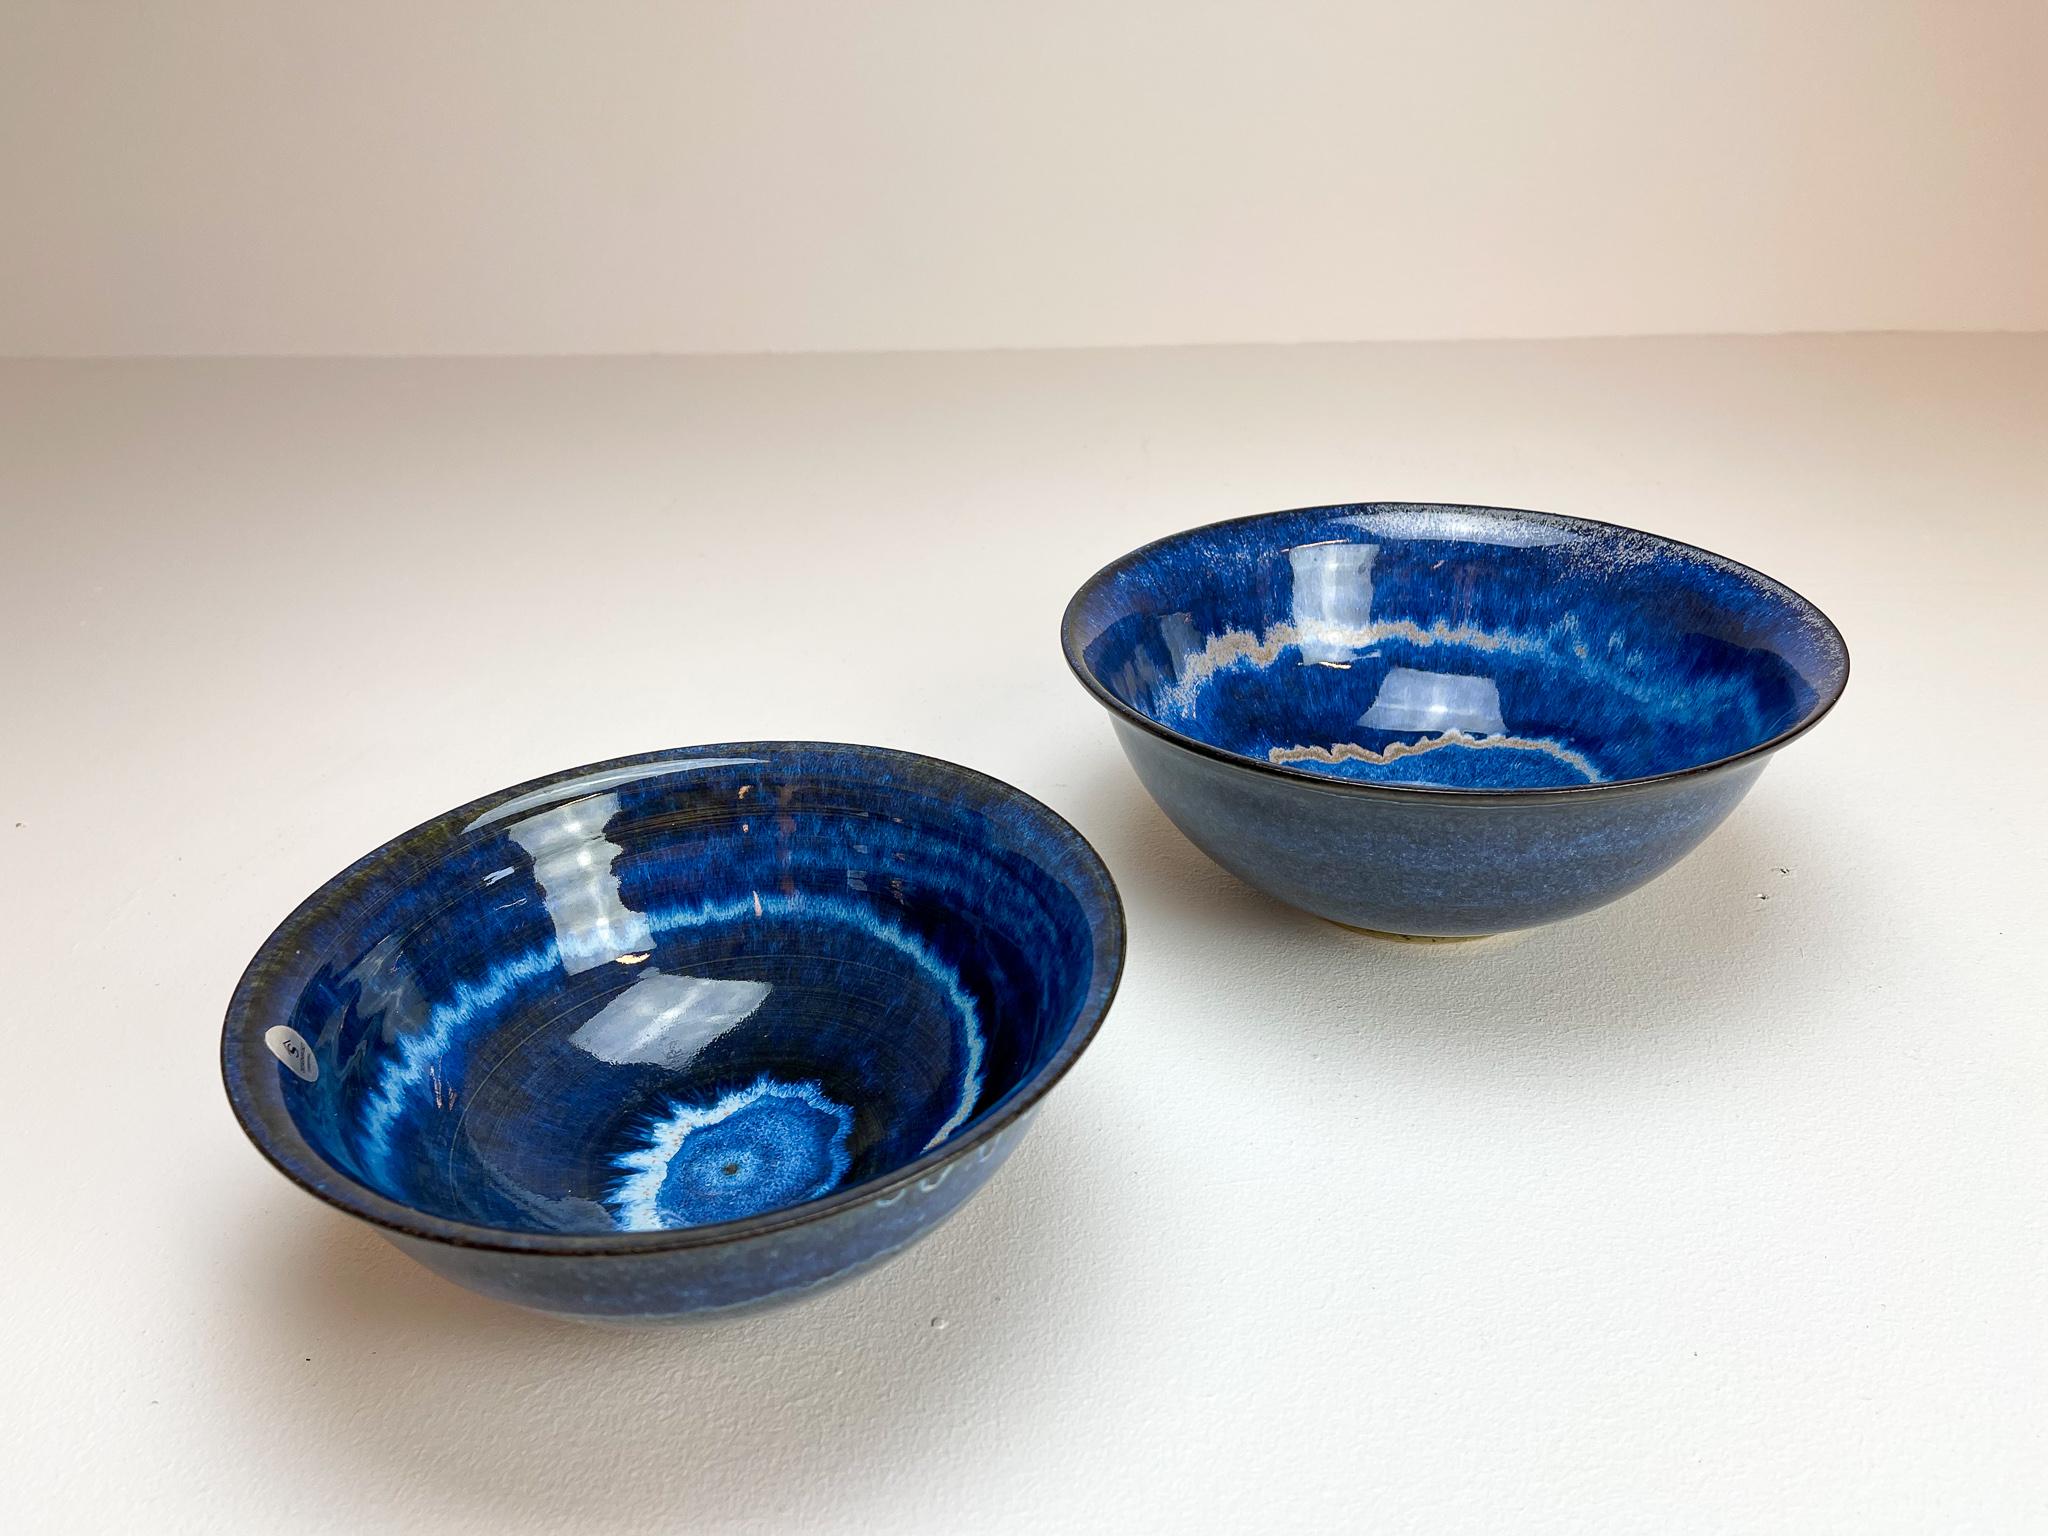 Swedish Scandinavian Modern Ceramic Bowls by Carl-Harry Stålhane Design Huset, Sweden For Sale